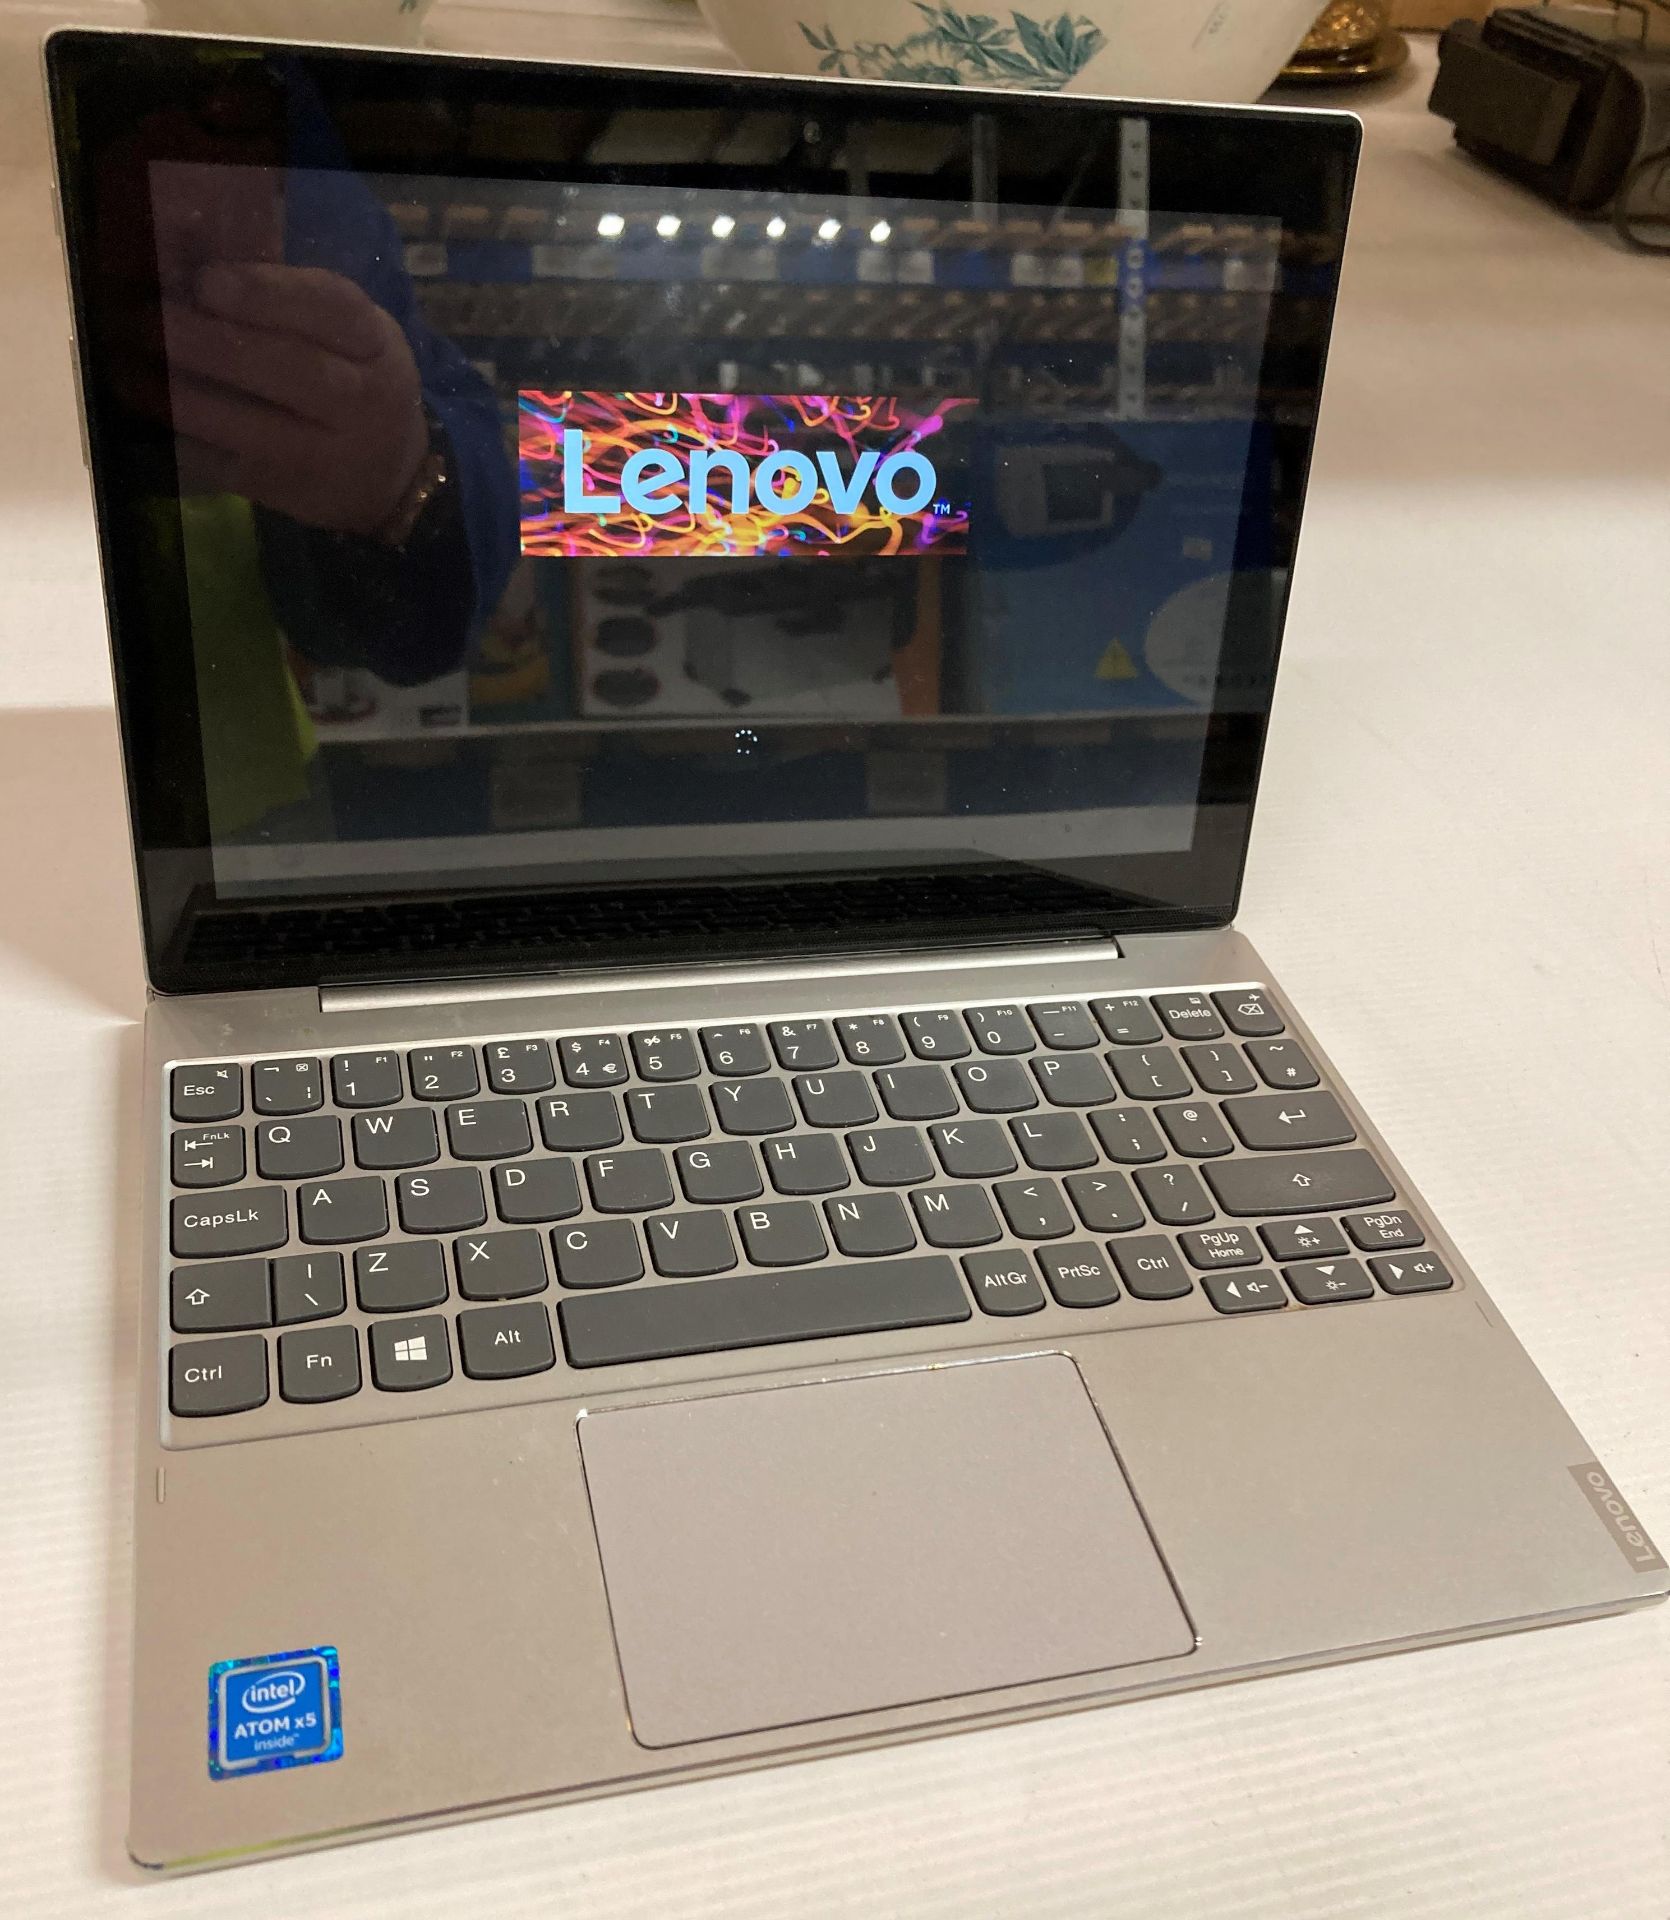 Lenovo Mix320- laptop Intel atom 4GB RAM 64GB HD - no power lead (M13)